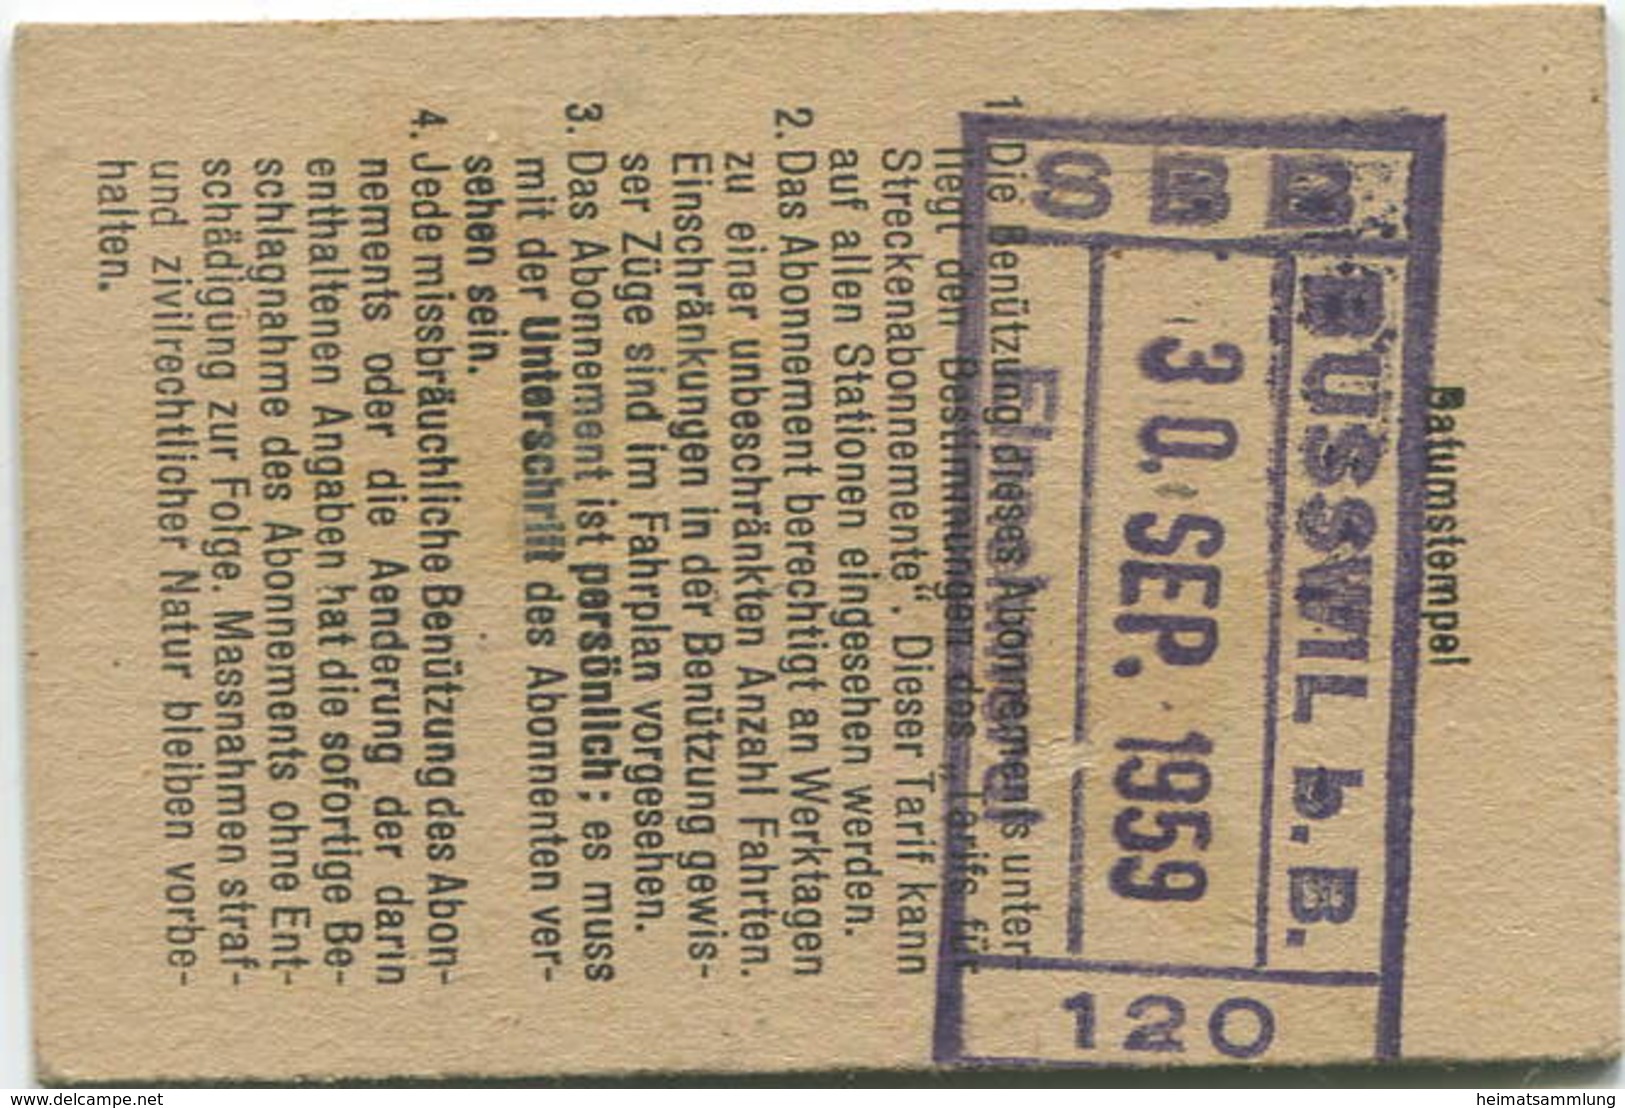 Schweiz - Persönliches Arbeiterabonnement - Busswil Nach Und Von Biel/Bienne - Fahrkarte 2. Klasse 1959 - Europe